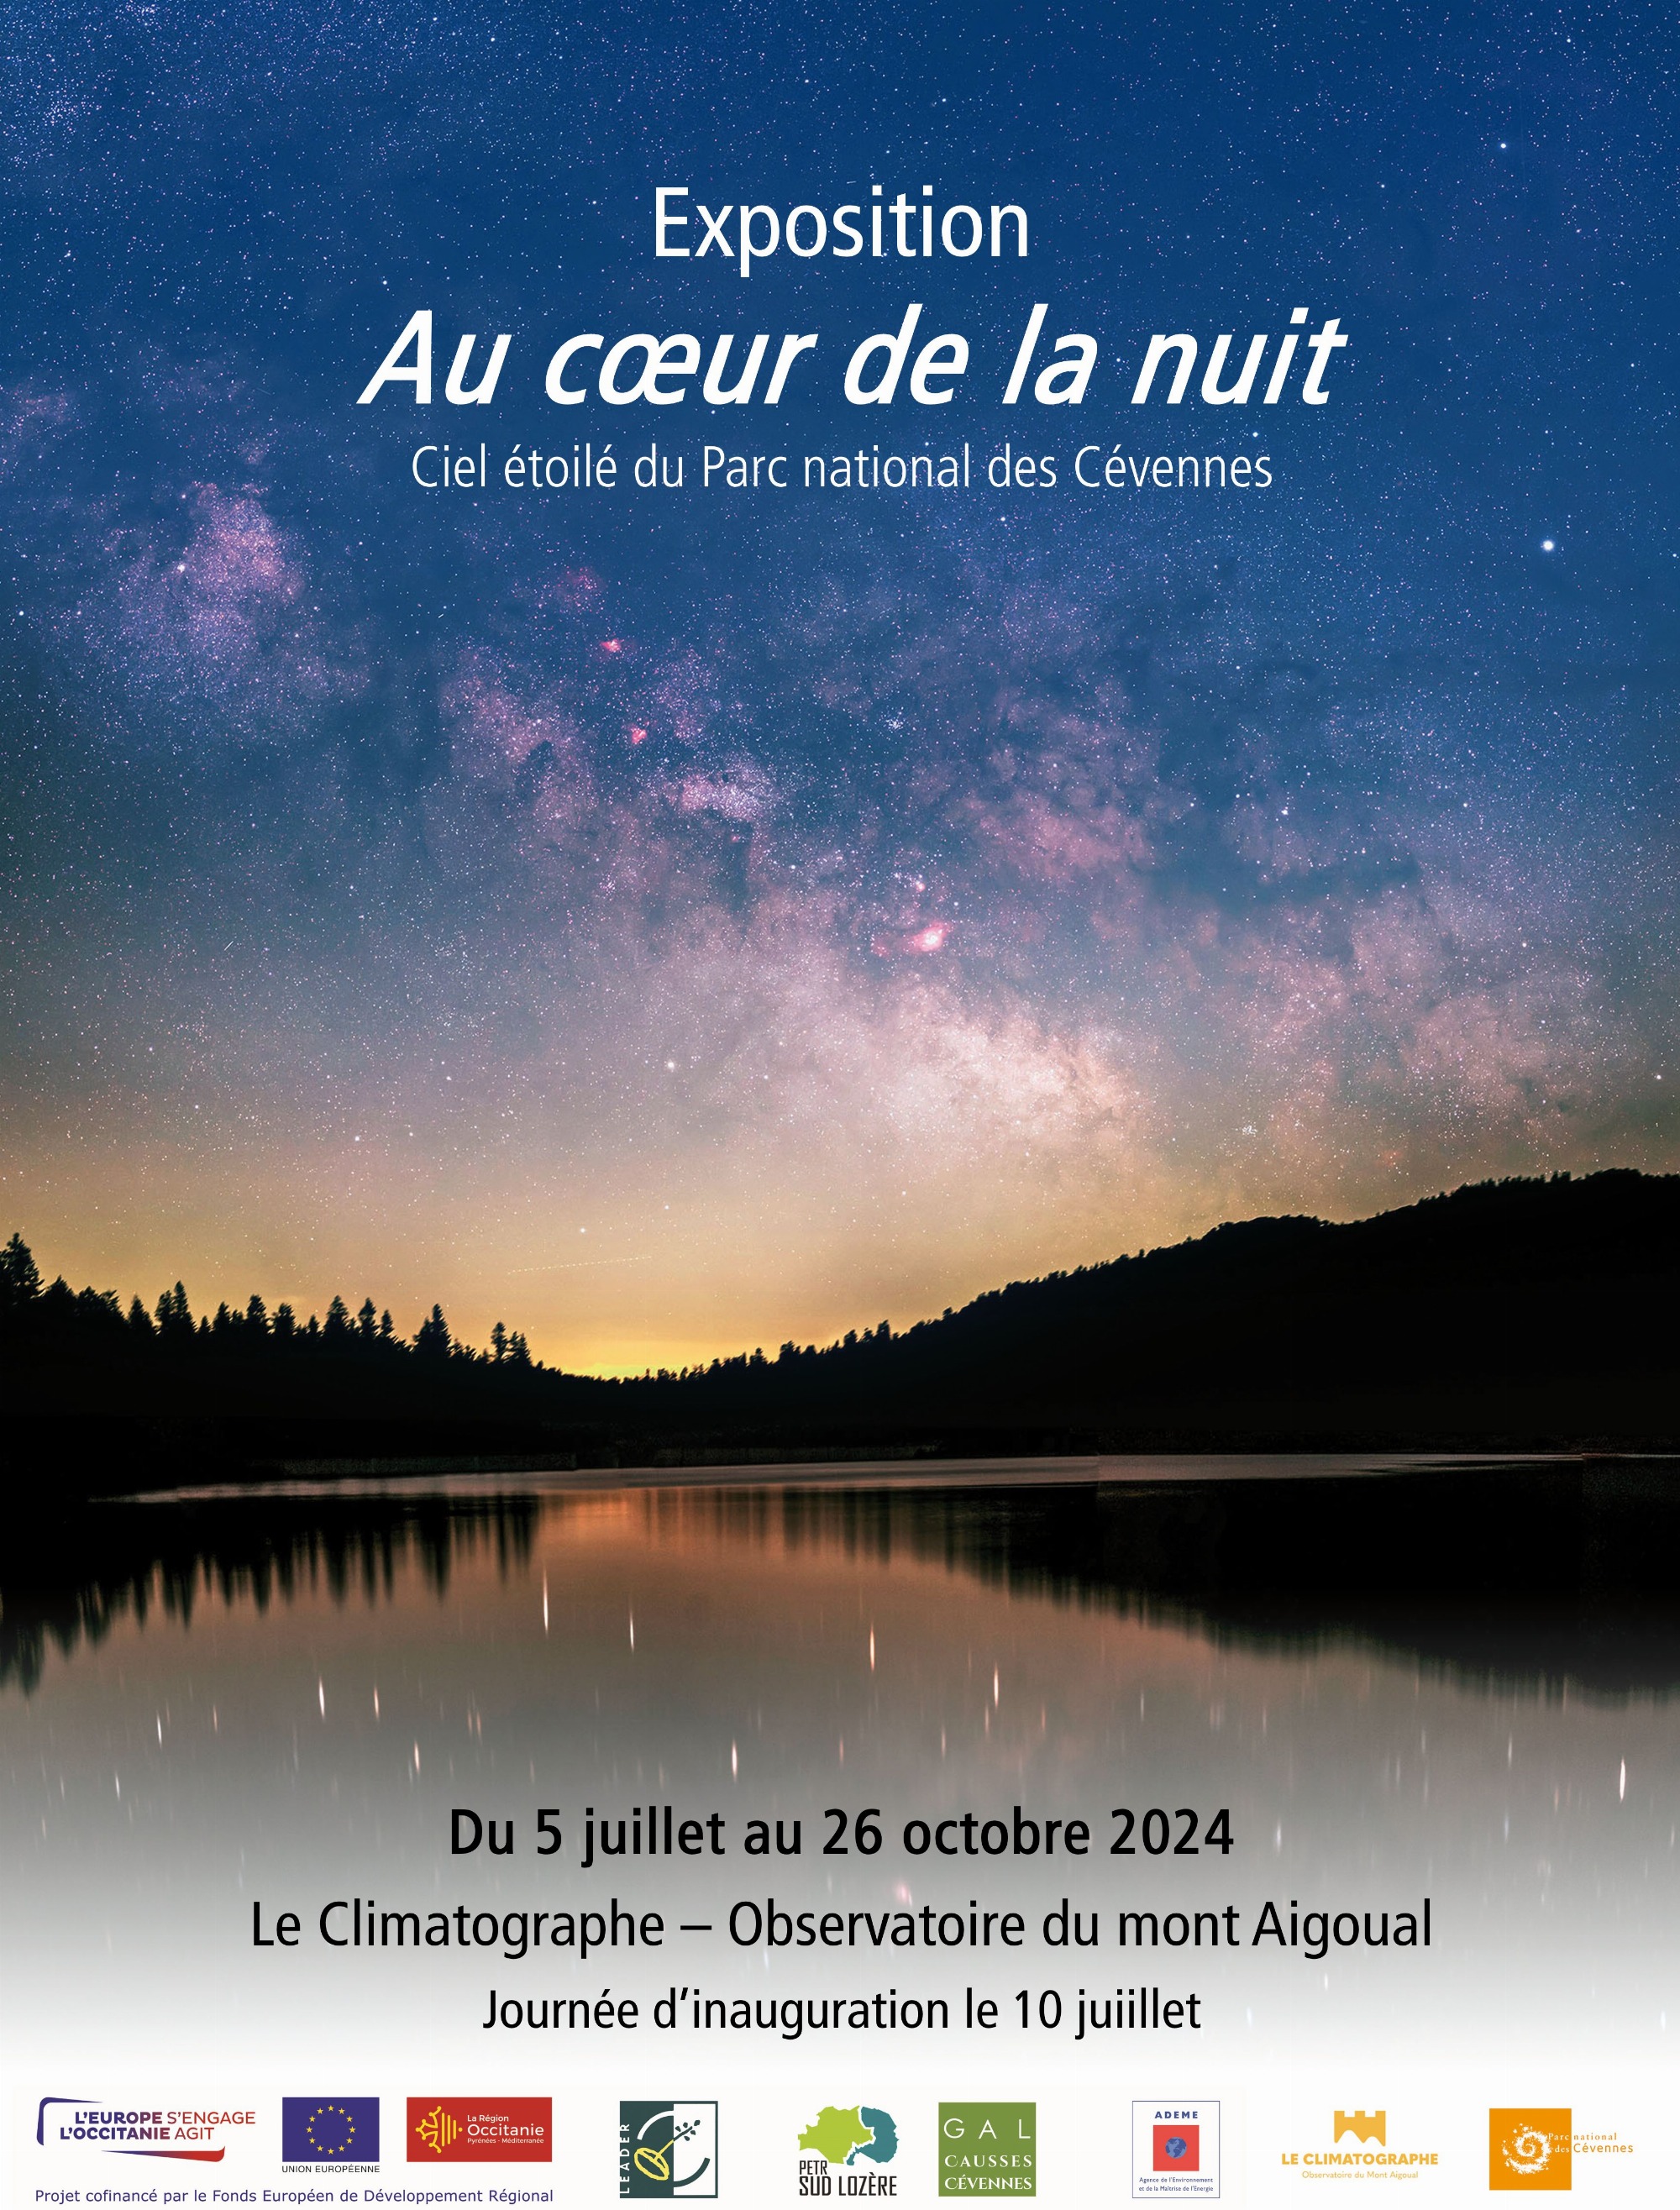 Exposition Nuit au Climatographe